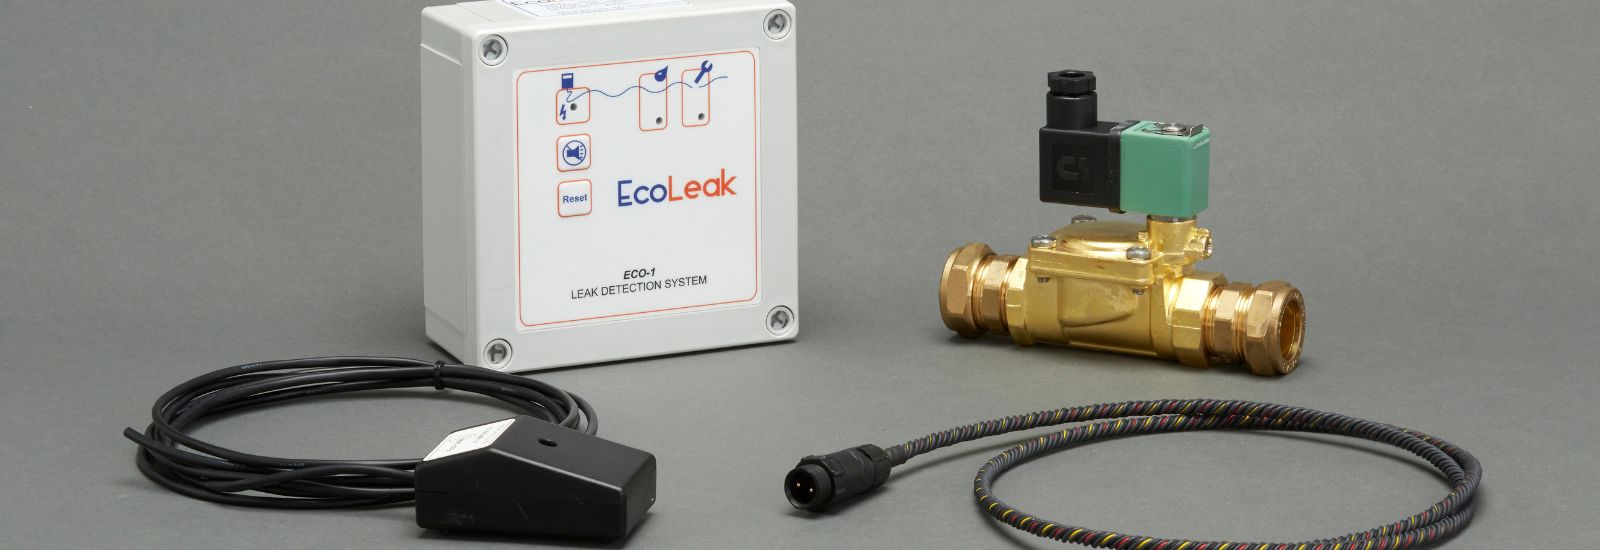 Buy Water Leak Detection Kits Online